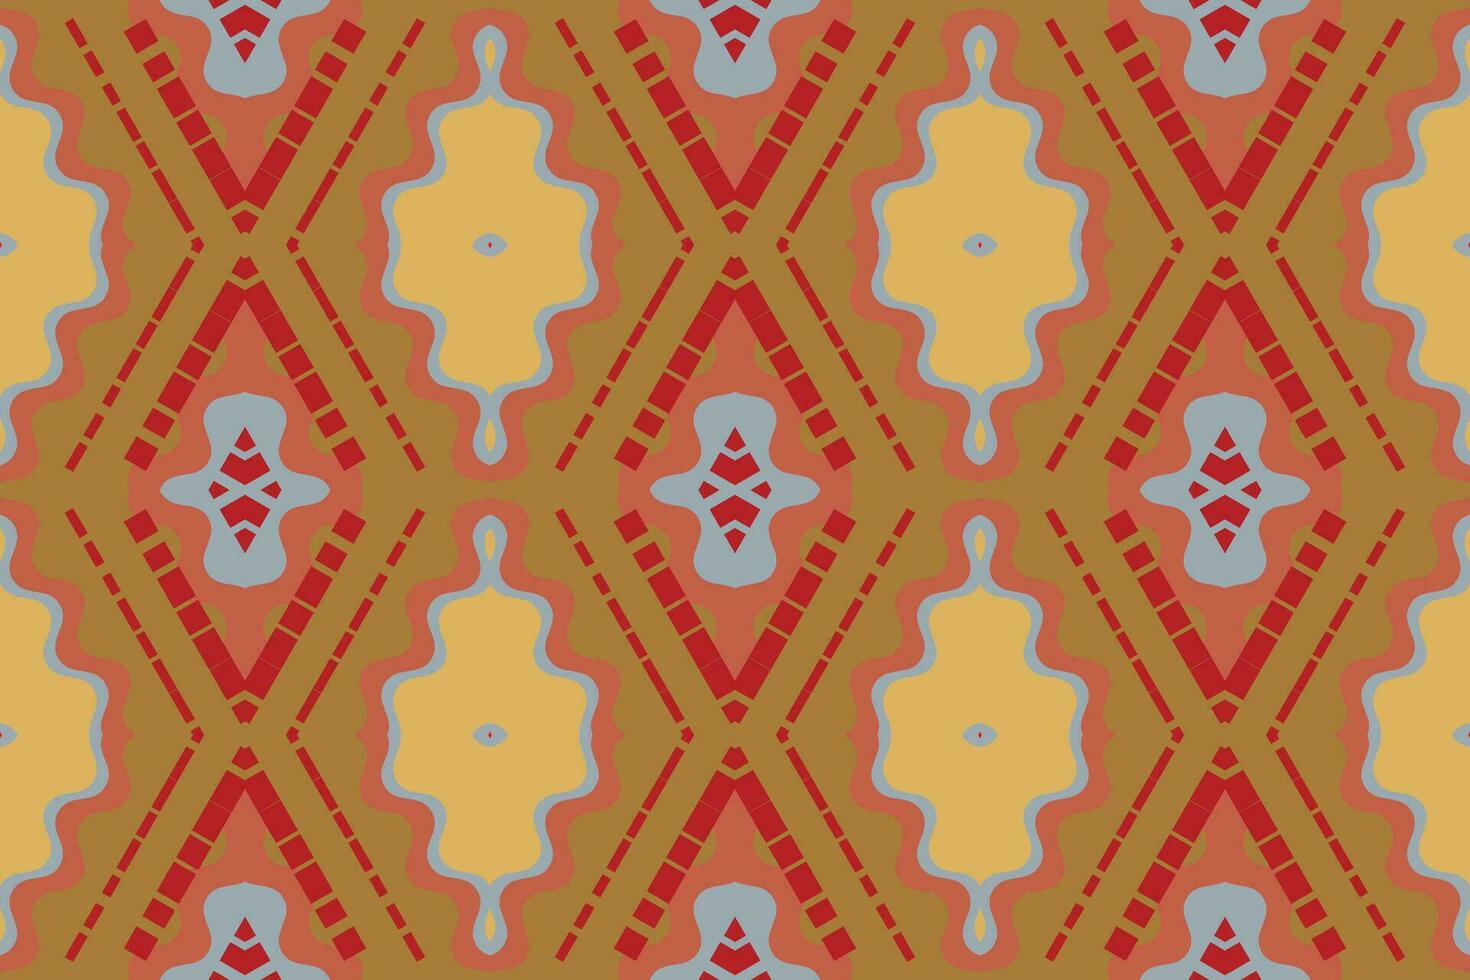 ikat blommig paisley broderi bakgrund. ikat mönster geometrisk etnisk orientalisk mönster traditionell.aztec stil abstrakt vektor illustration.design för textur, tyg, kläder, inslagning, sarong.